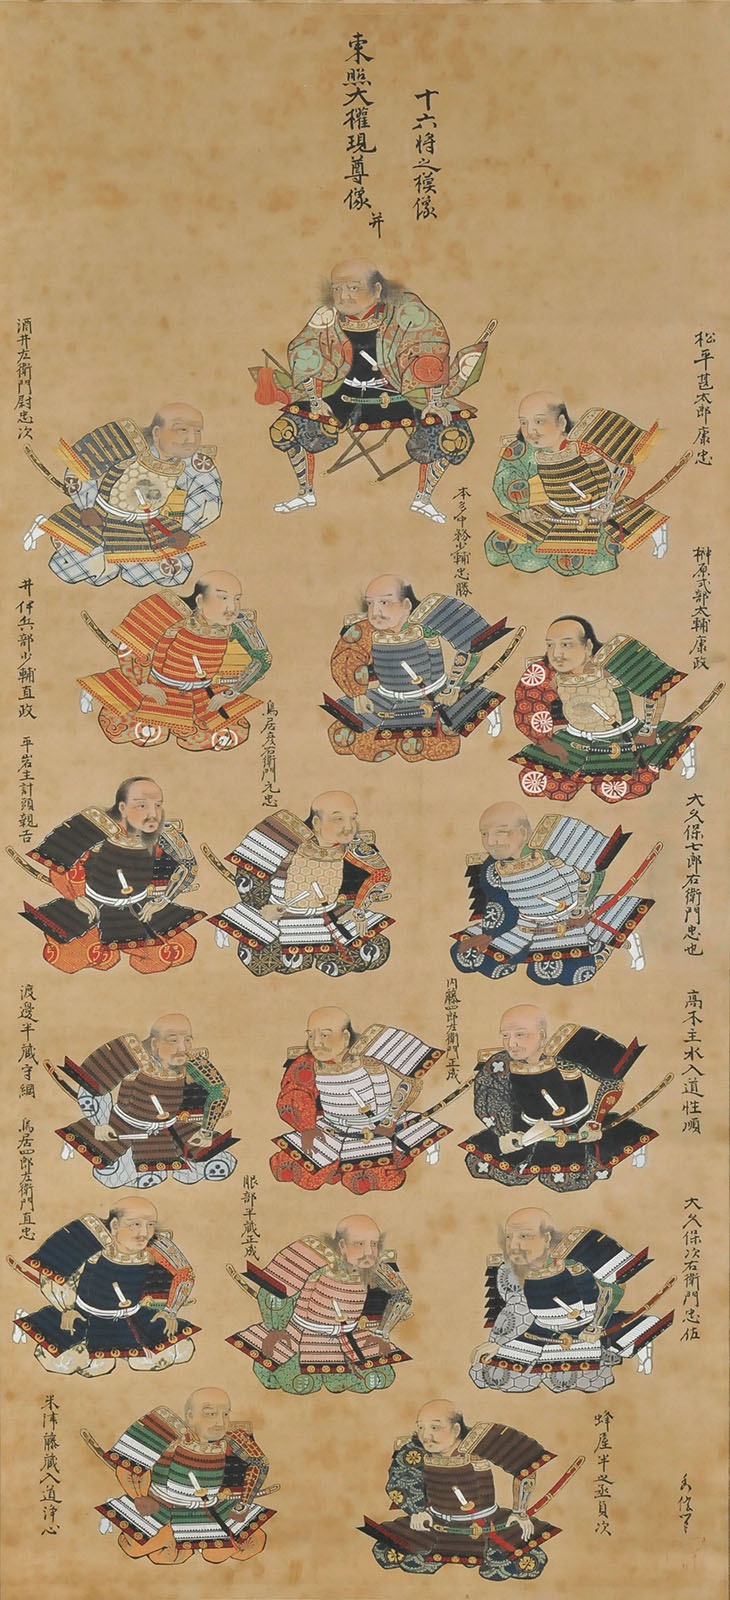 狩野秀信《徳川十六将図》　江戸時代中期(18世紀)　致道博物館蔵